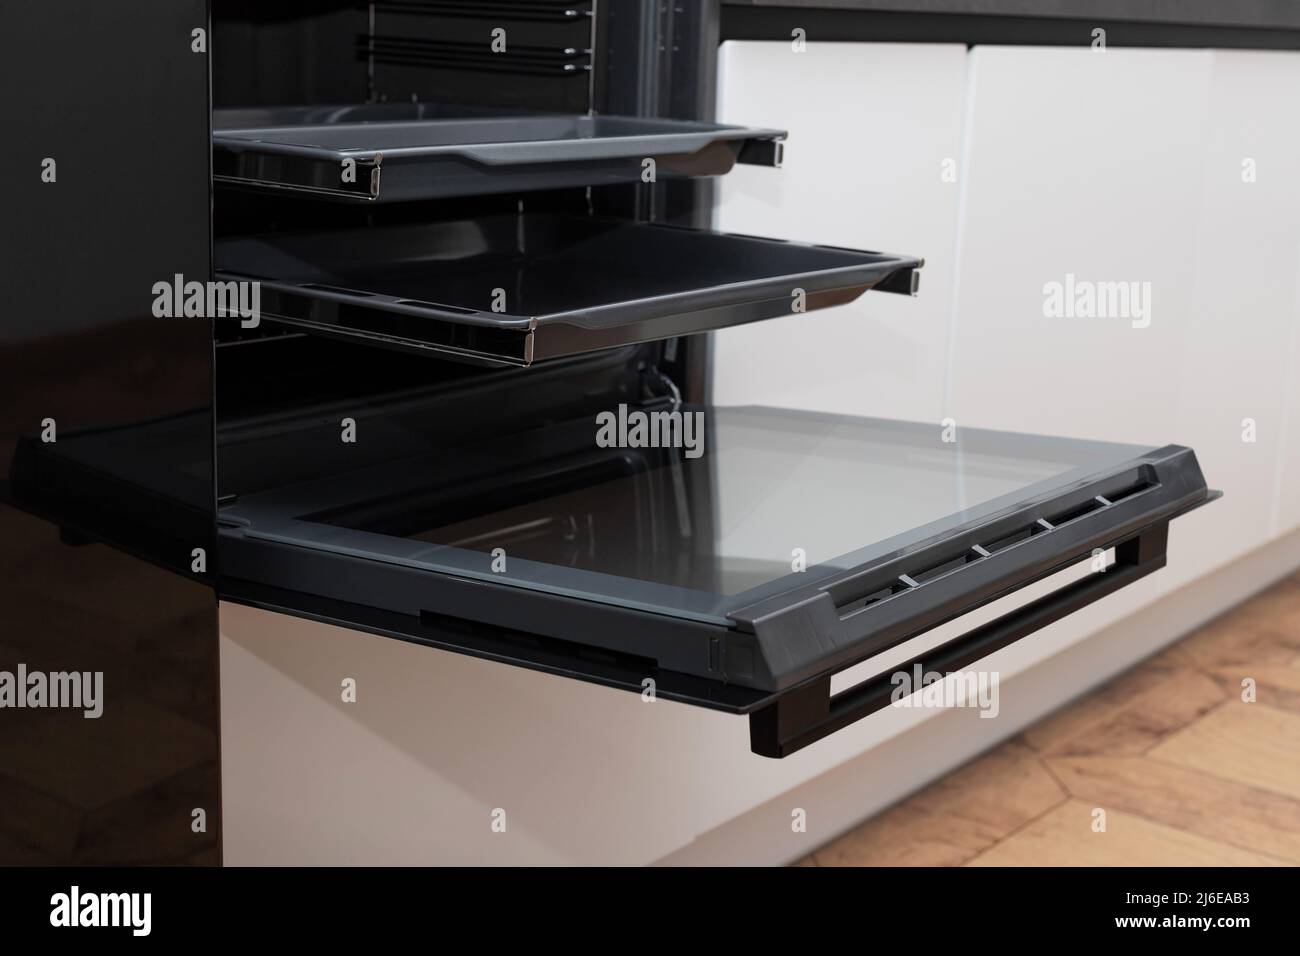 Offener elektrischer Ofen in moderner weißer Küche eingebaut Stockfoto